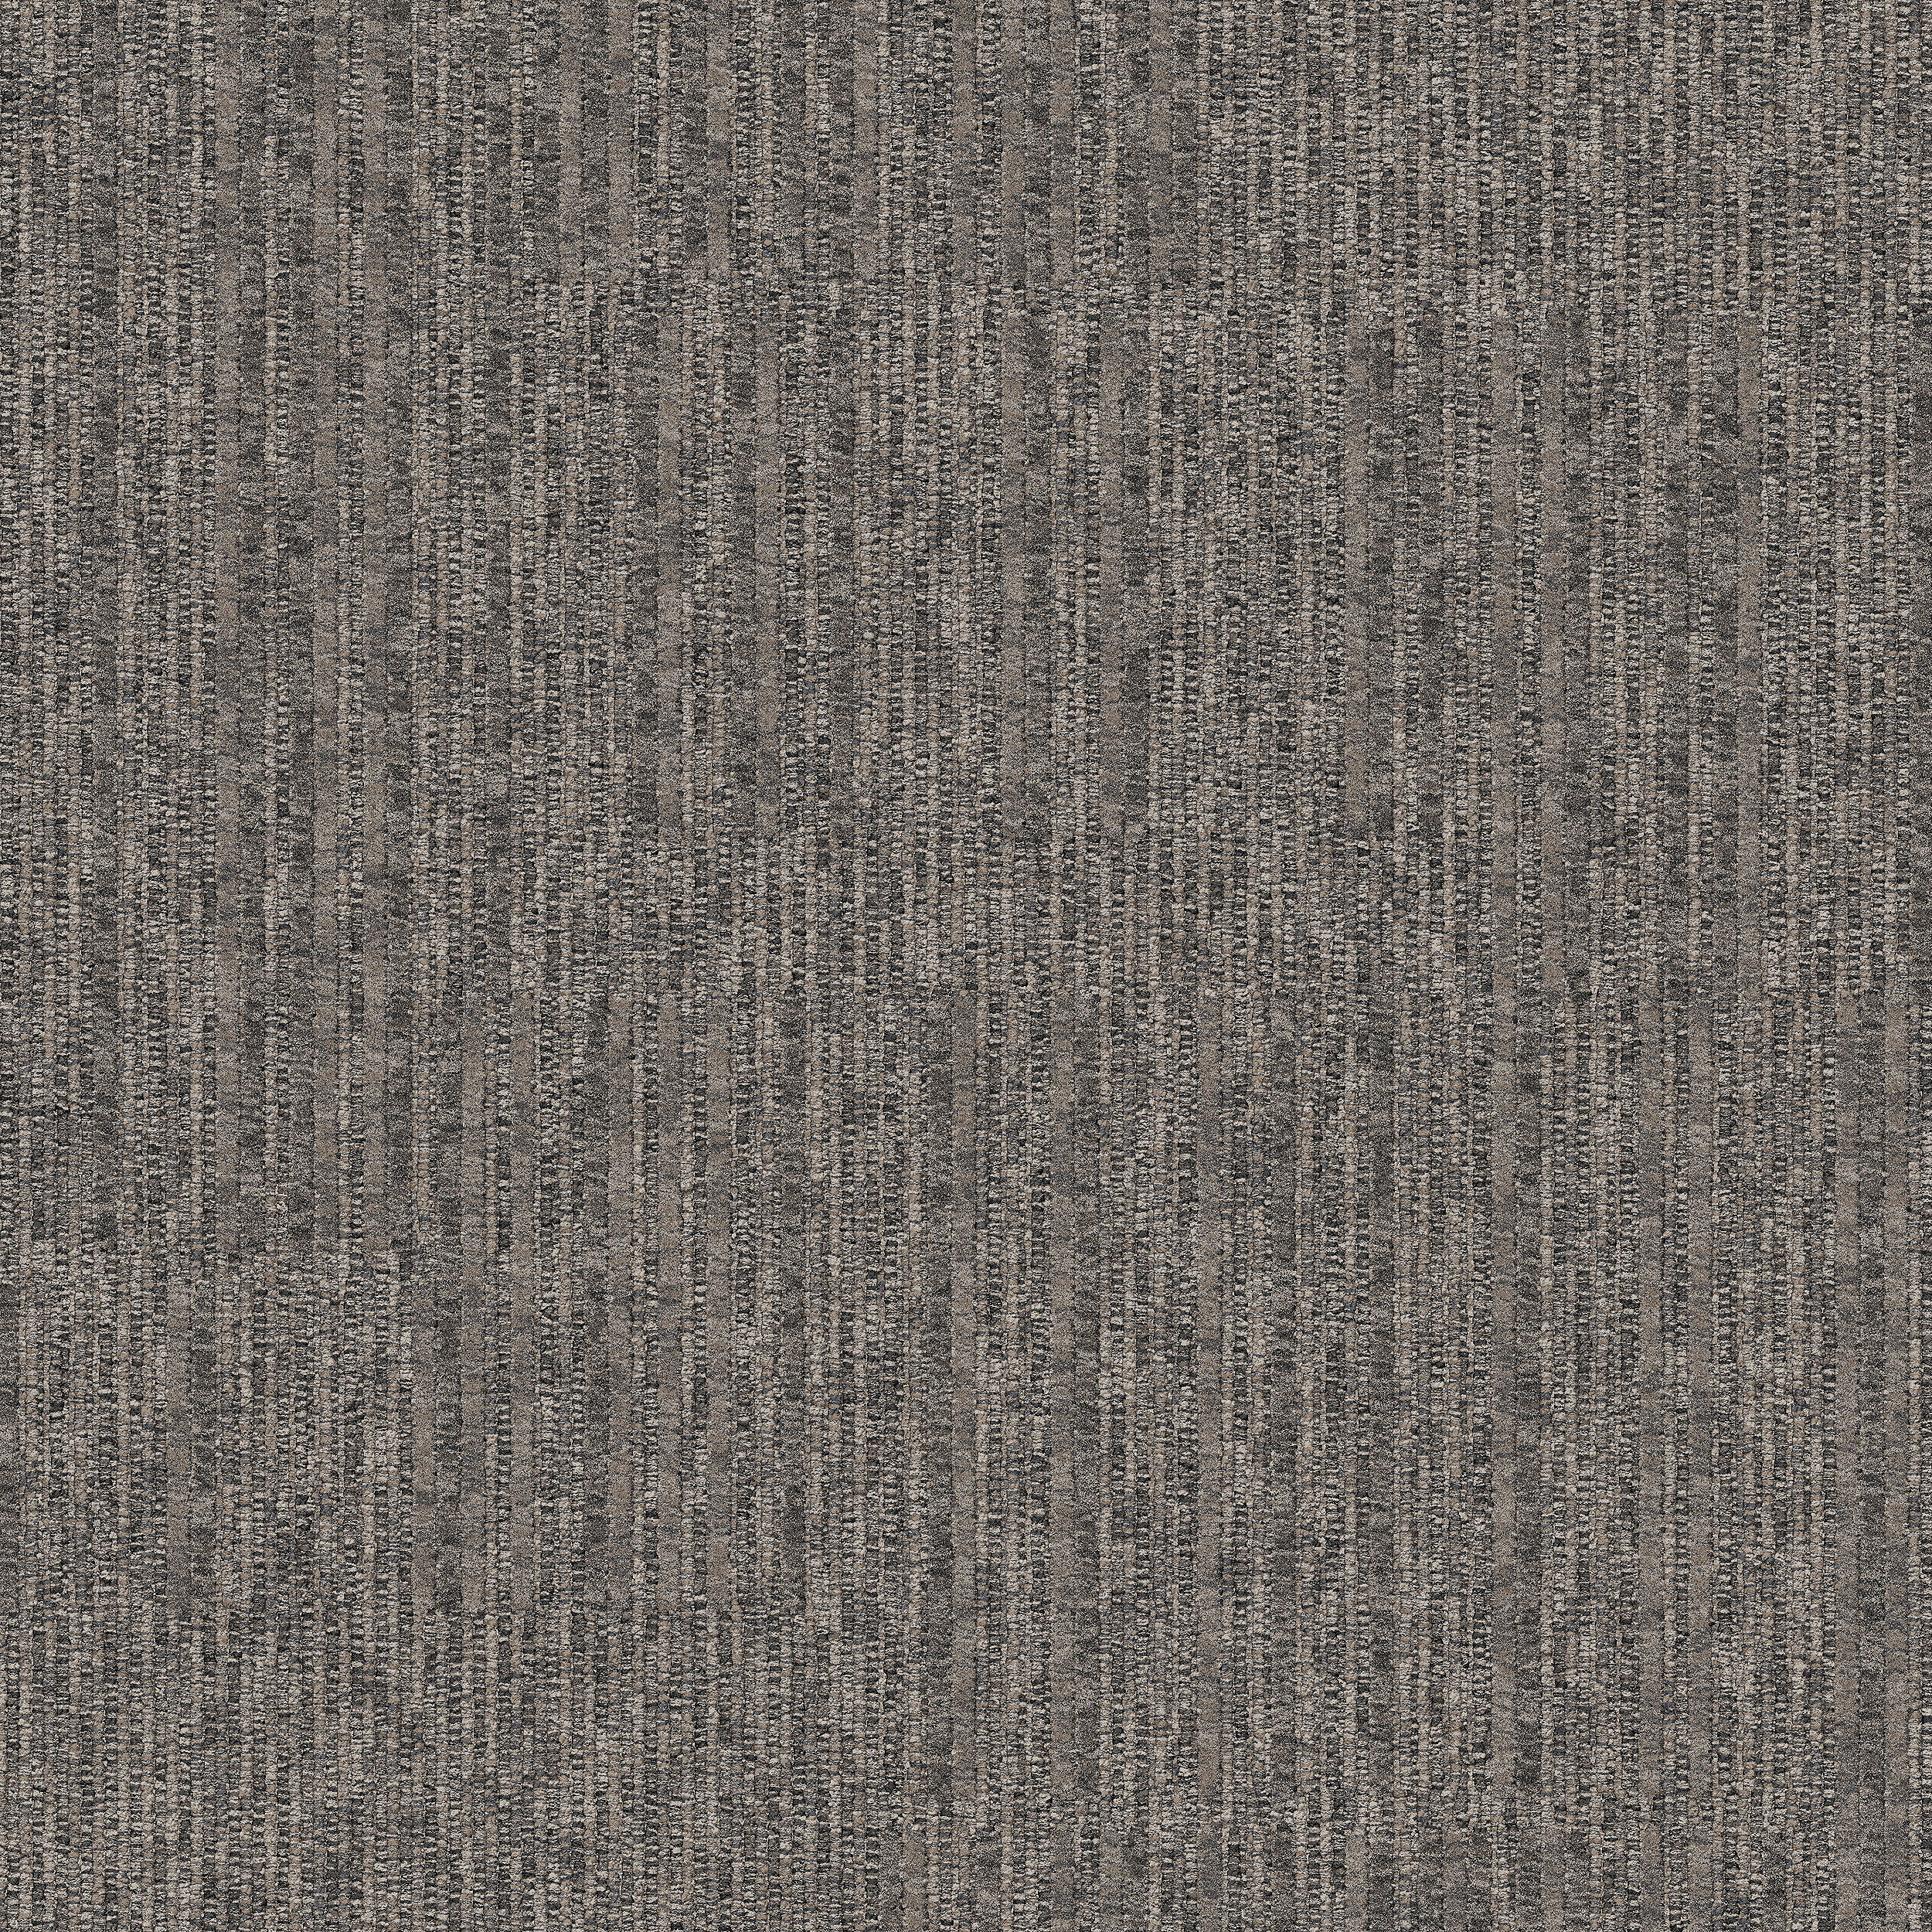 Equilibrium Carpet Tile In Persistence número de imagen 4